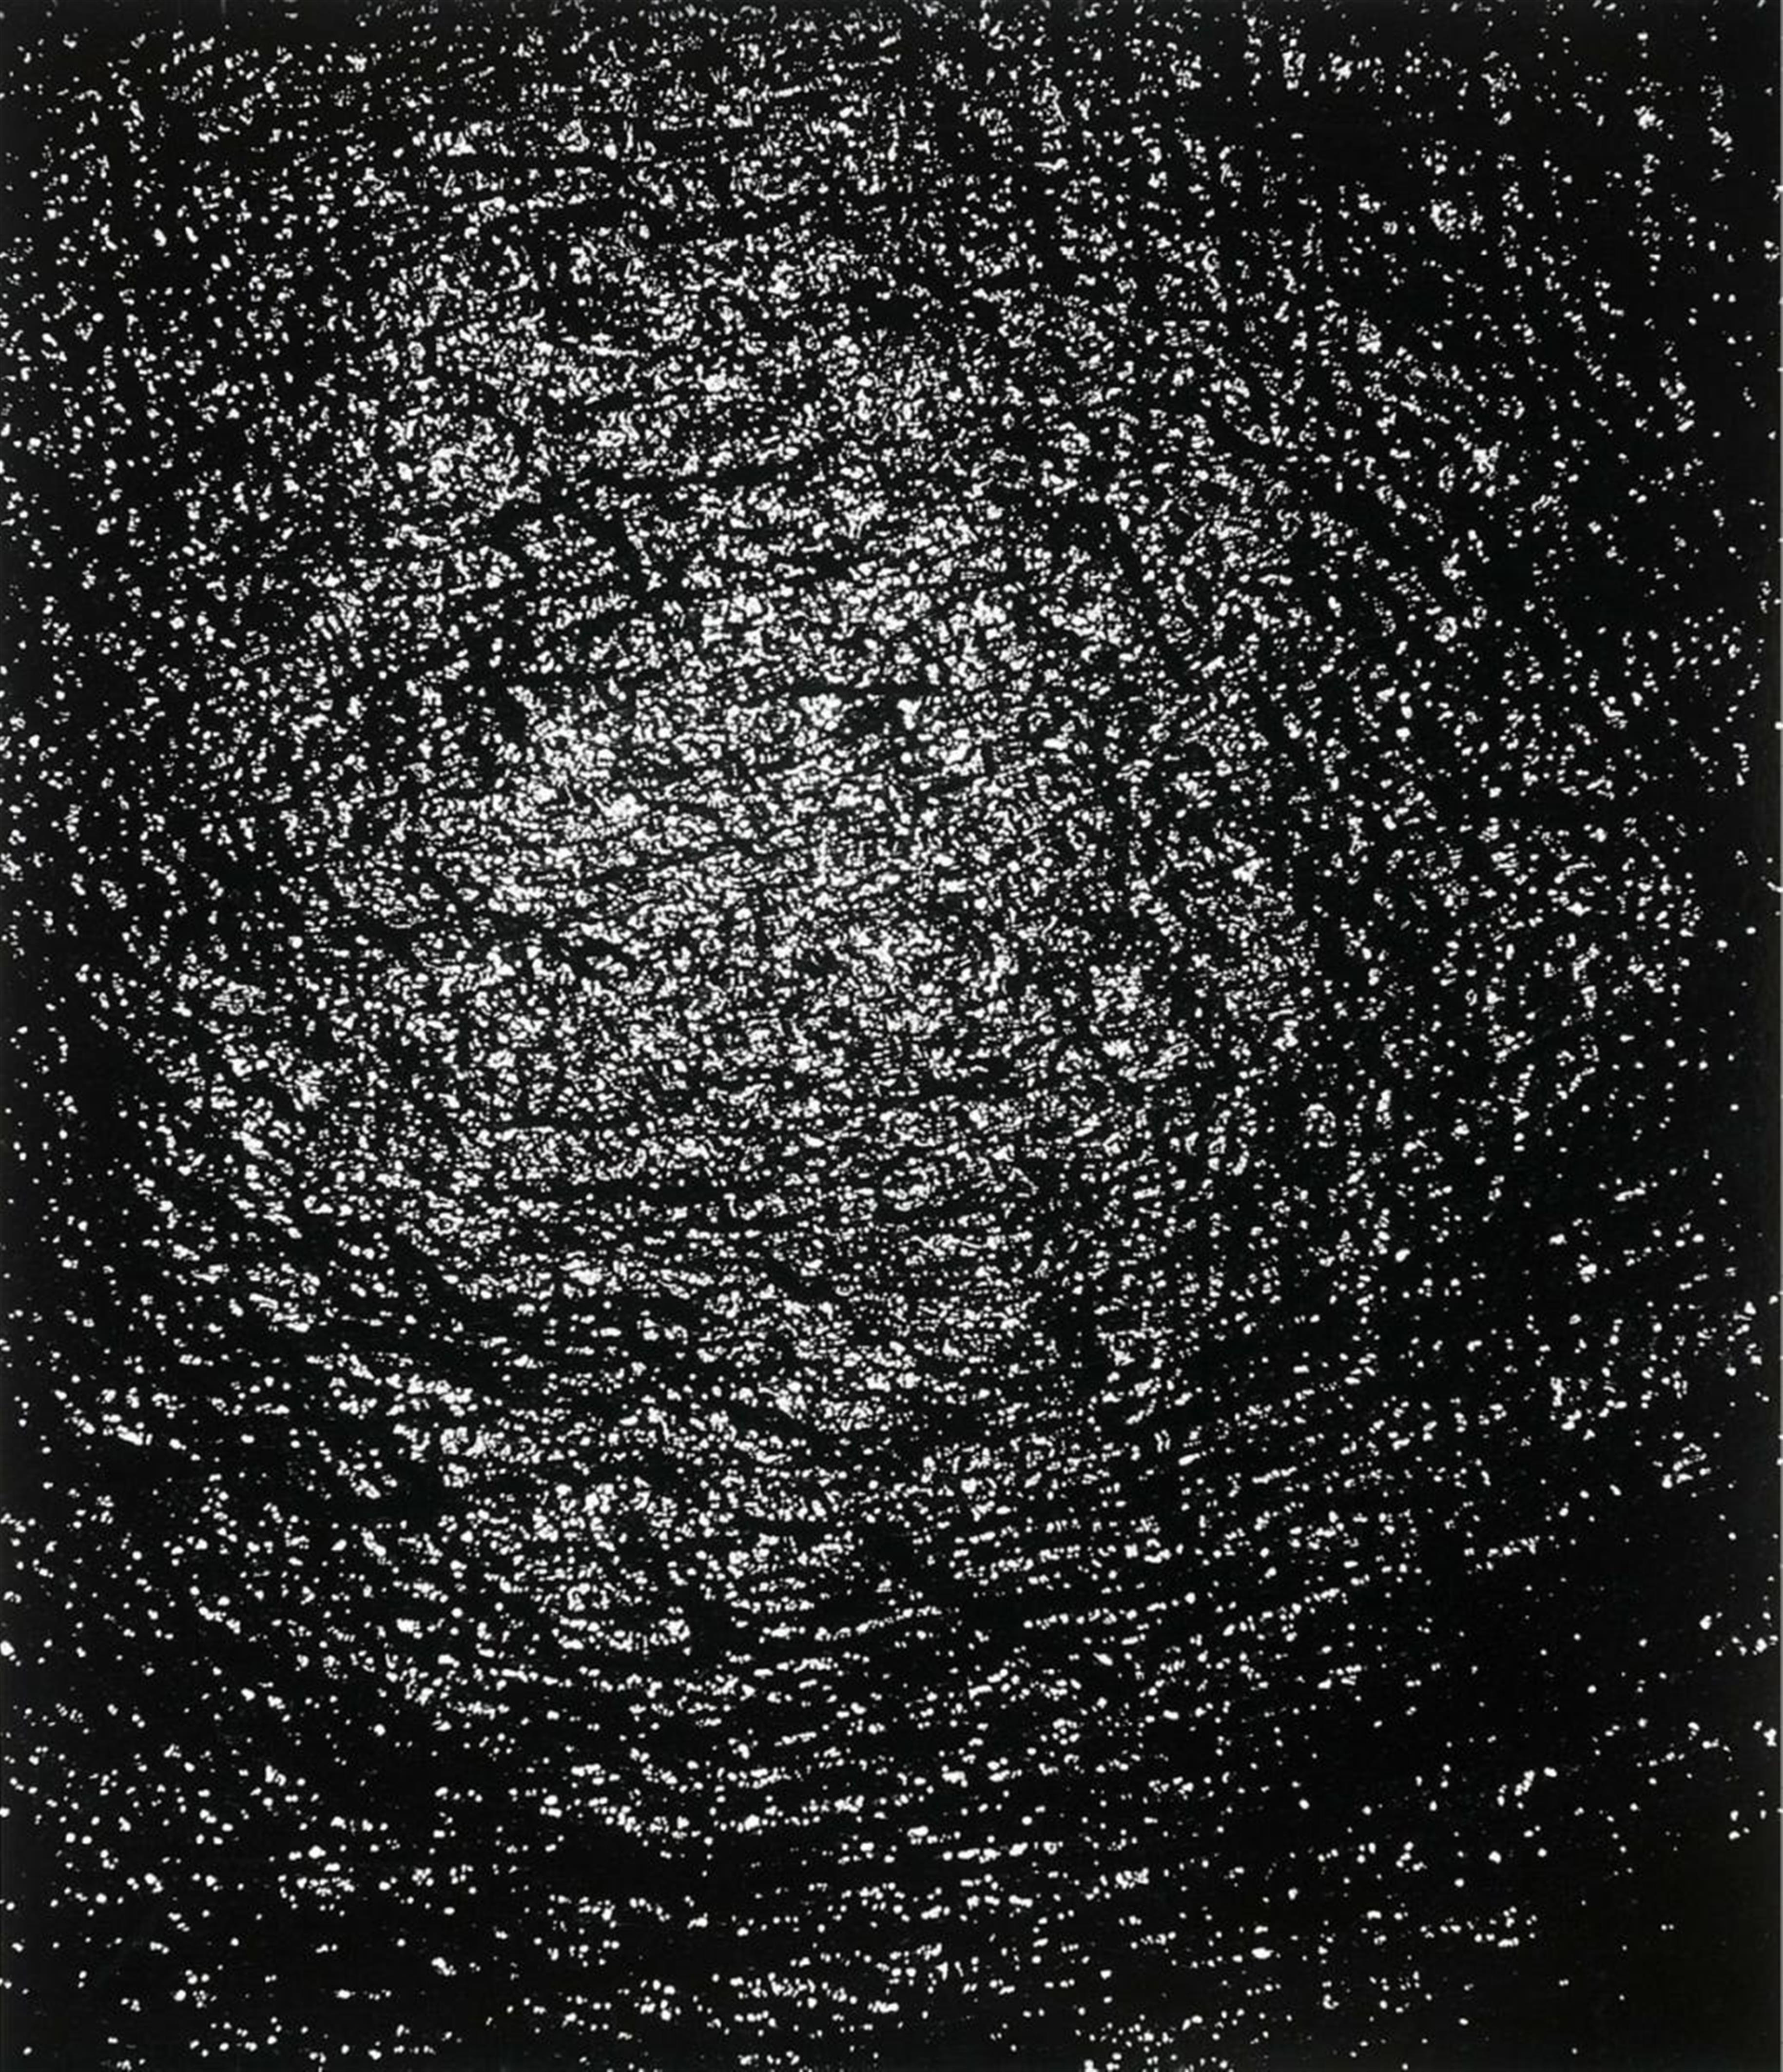 Otto Steinert - Die Sonne von Amalfi - image-1